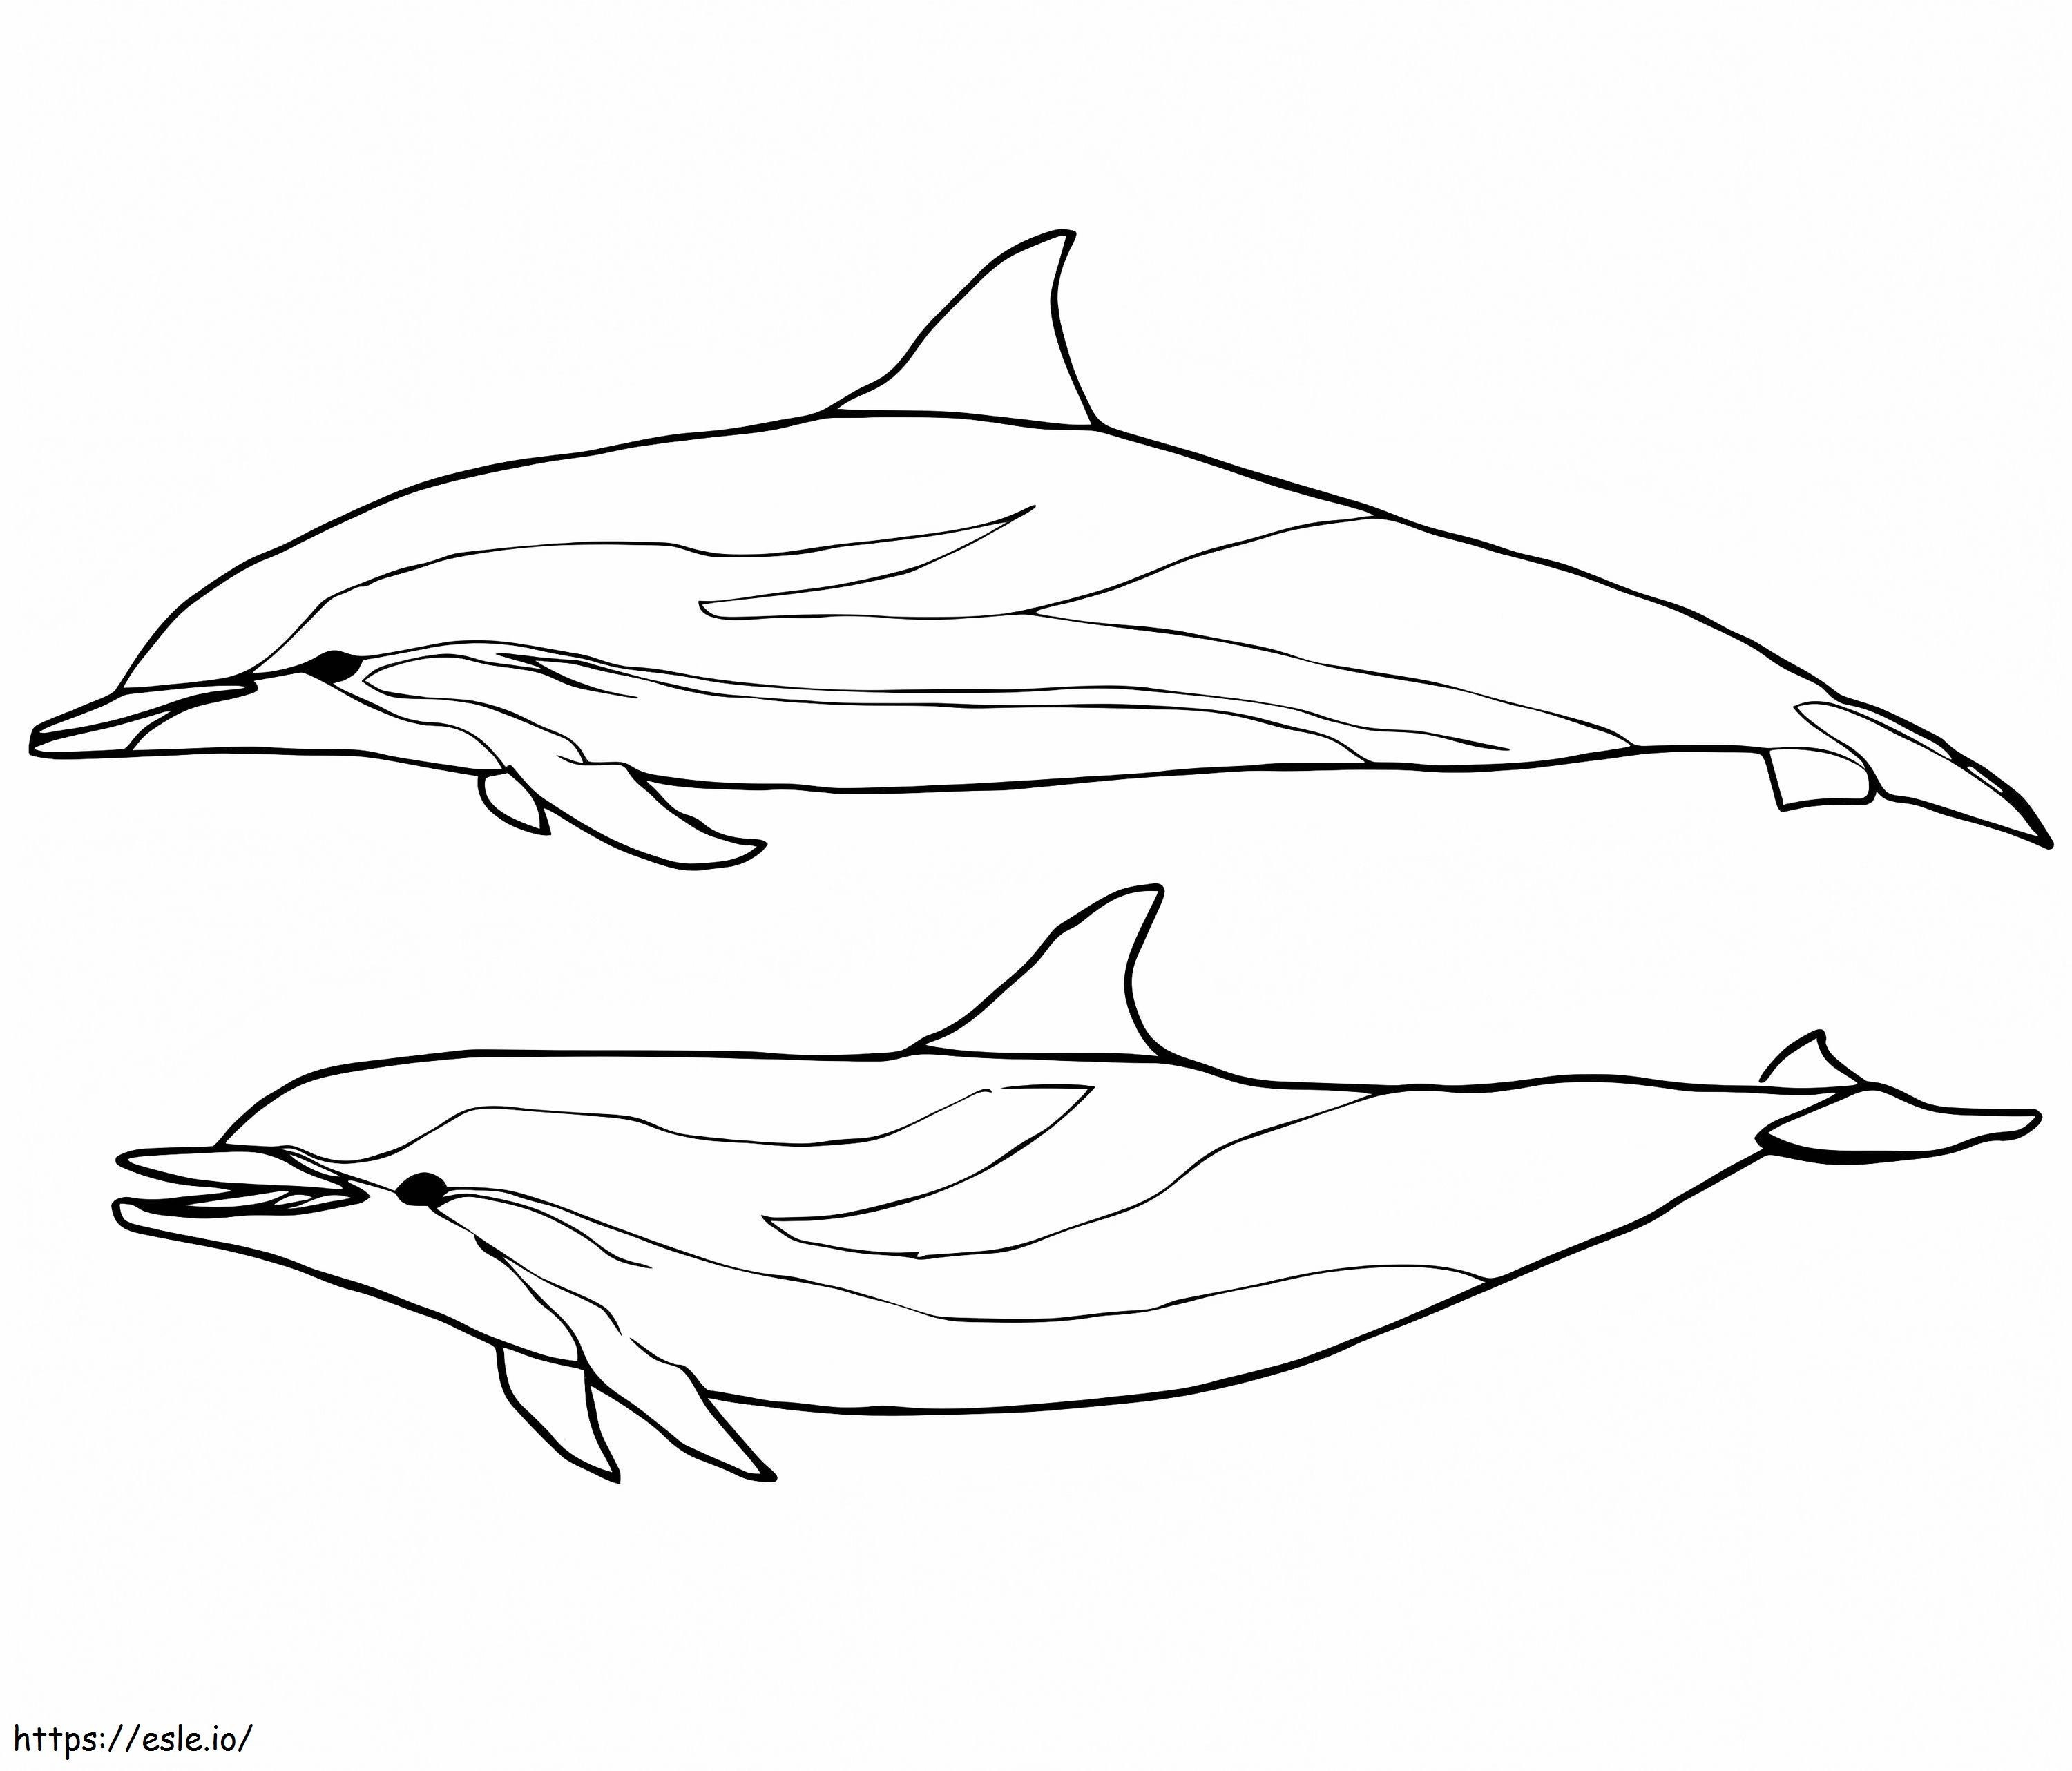 Dois golfinhos azuis e brancos para colorir